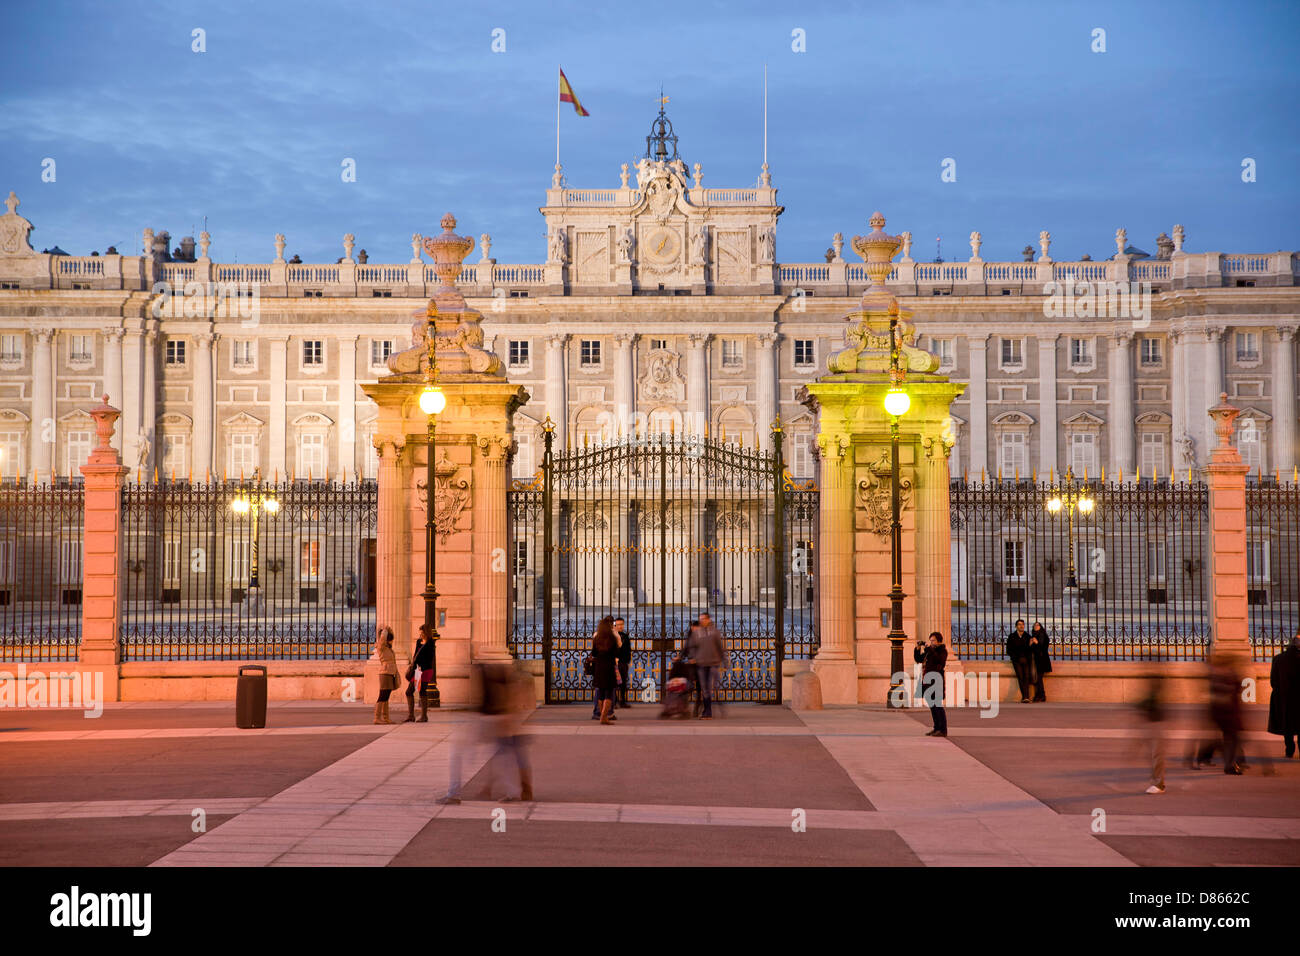 Allumé le Palacio Real et la Plaza de la Armeria de nuit, le palais des rois dans la capitale espagnole Madrid, Spain, Europe Banque D'Images